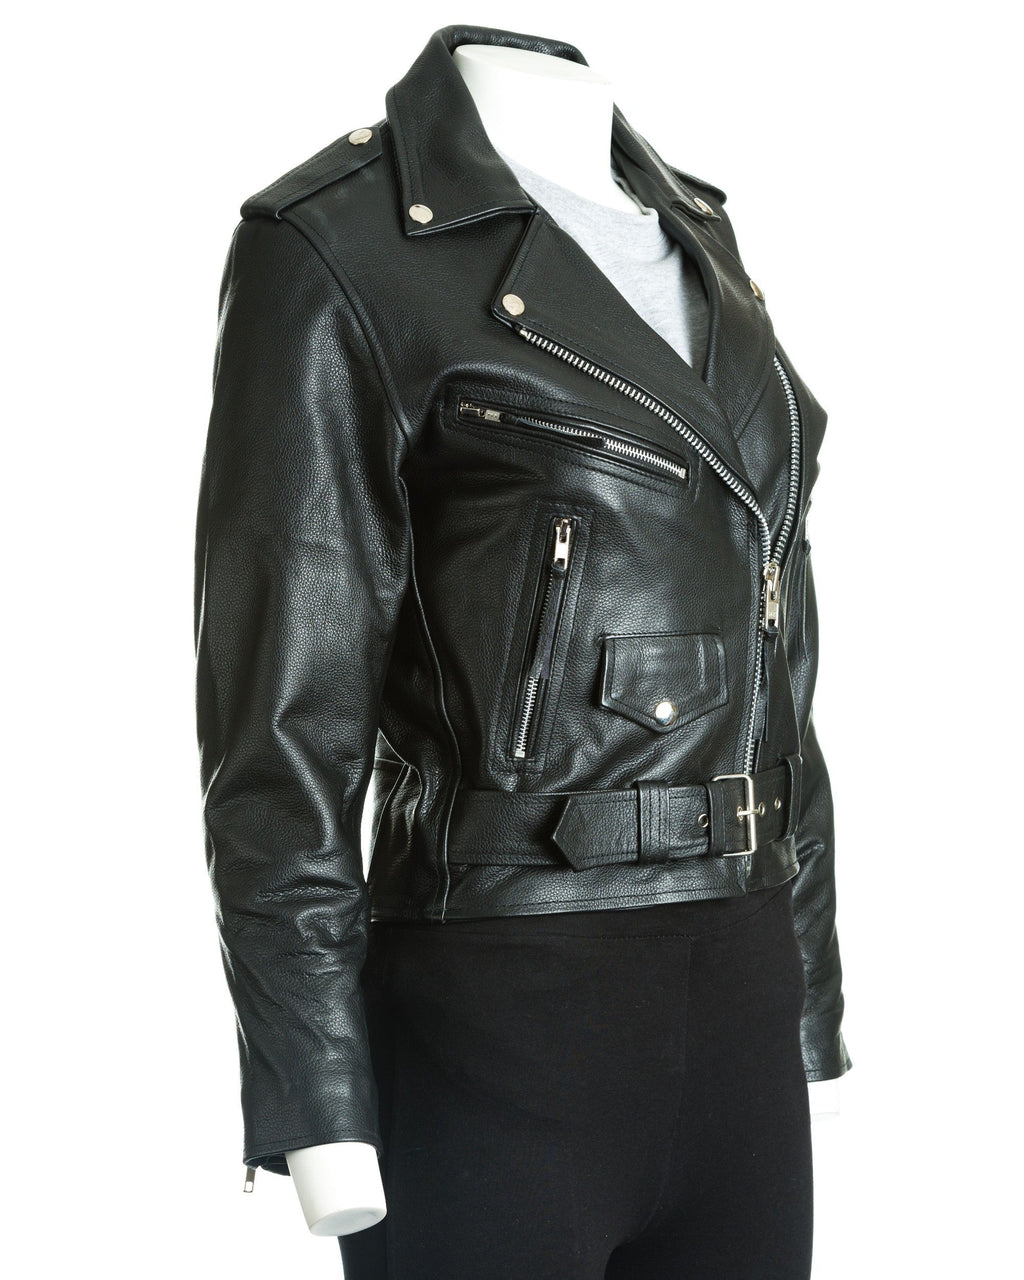 Women's Black Classic Brando Biker Style Cow Hide Leather Jacket: Gemma